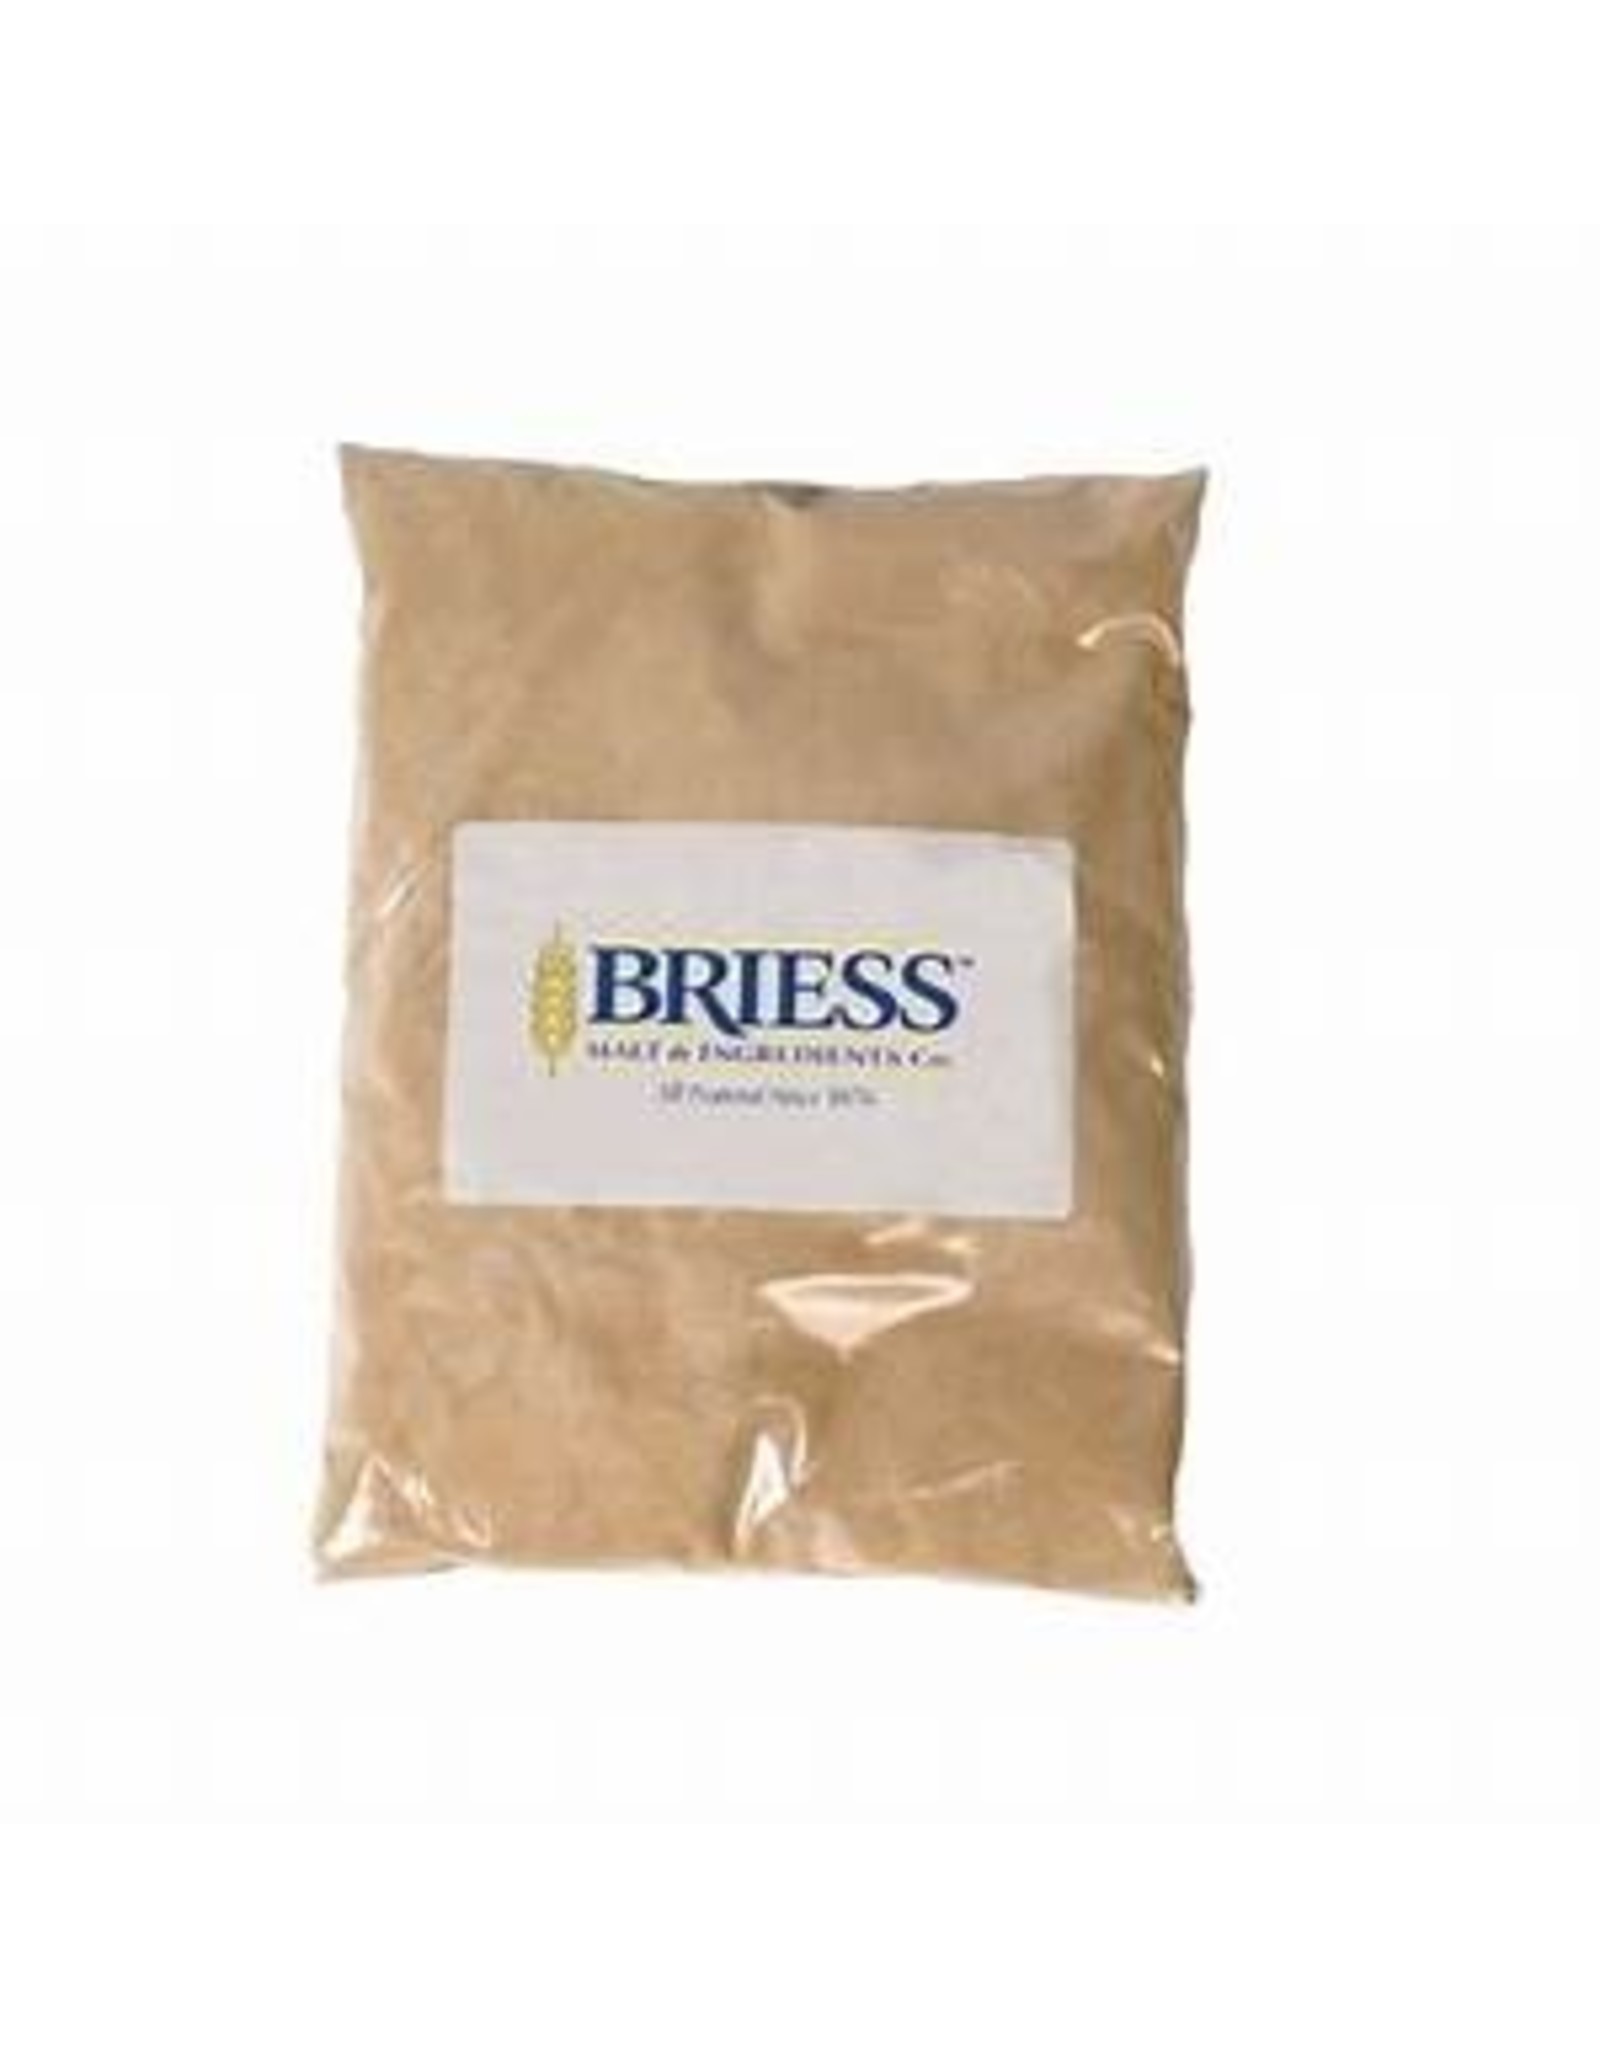 Briess Dry malt Extract Golden Light DME 1 LB